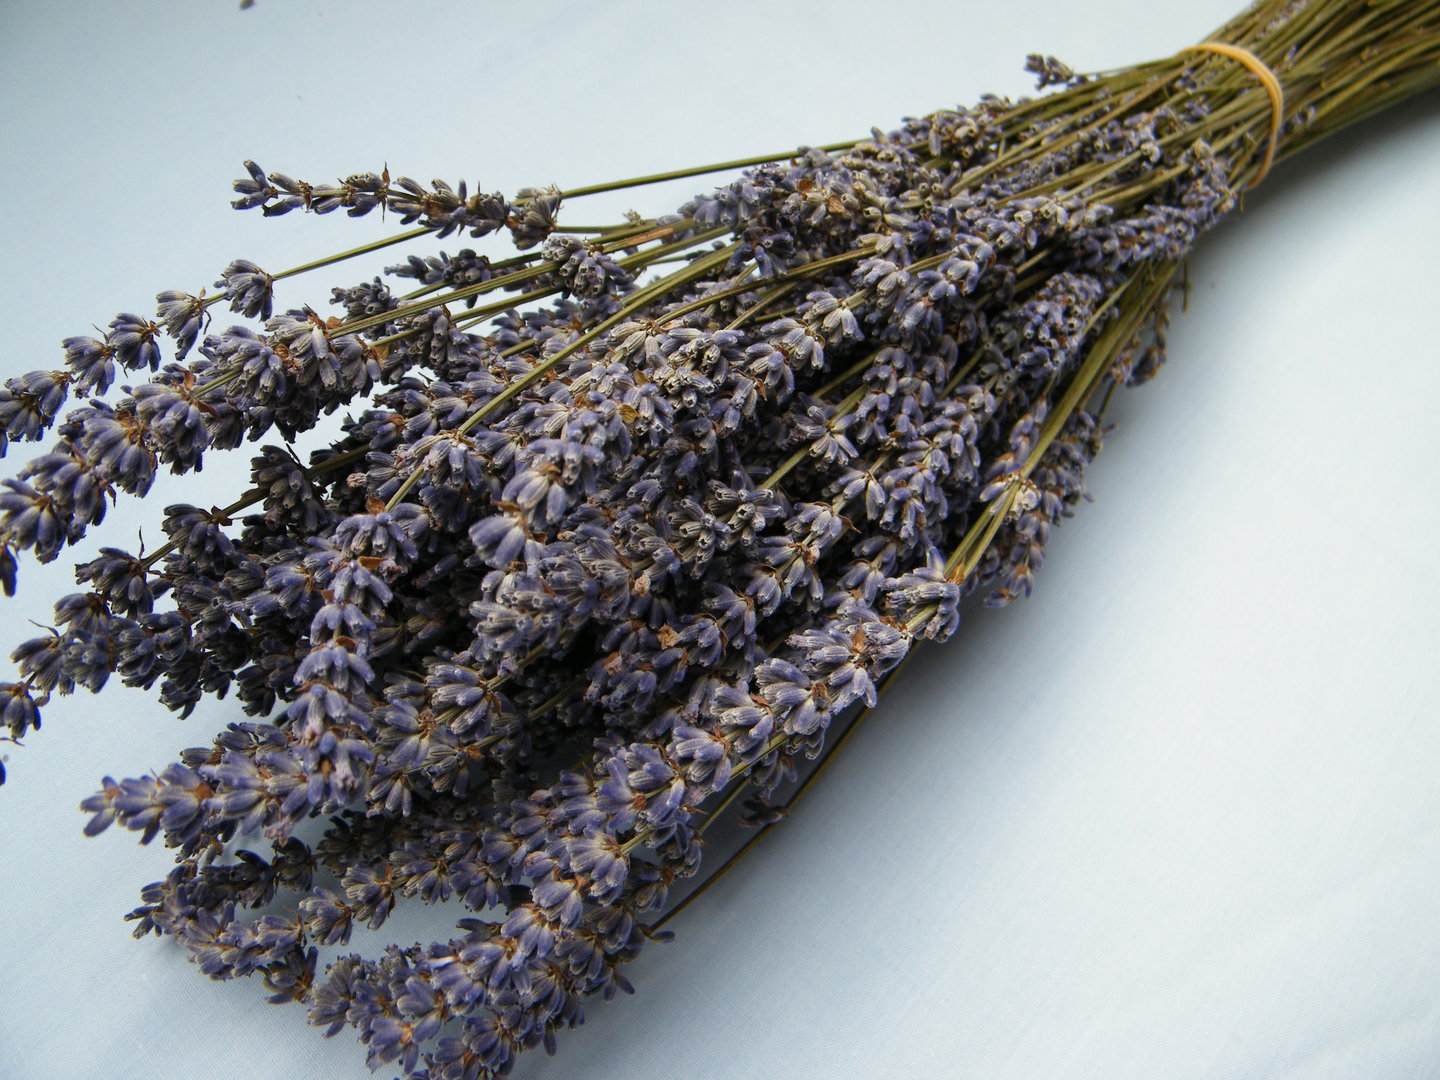 Tổng hợp hình ảnh hoa lavender khô đẹp nhất – Loài hoa may mắn, hạnh phúc - [Kích thước hình ảnh: 1440x1080 px]